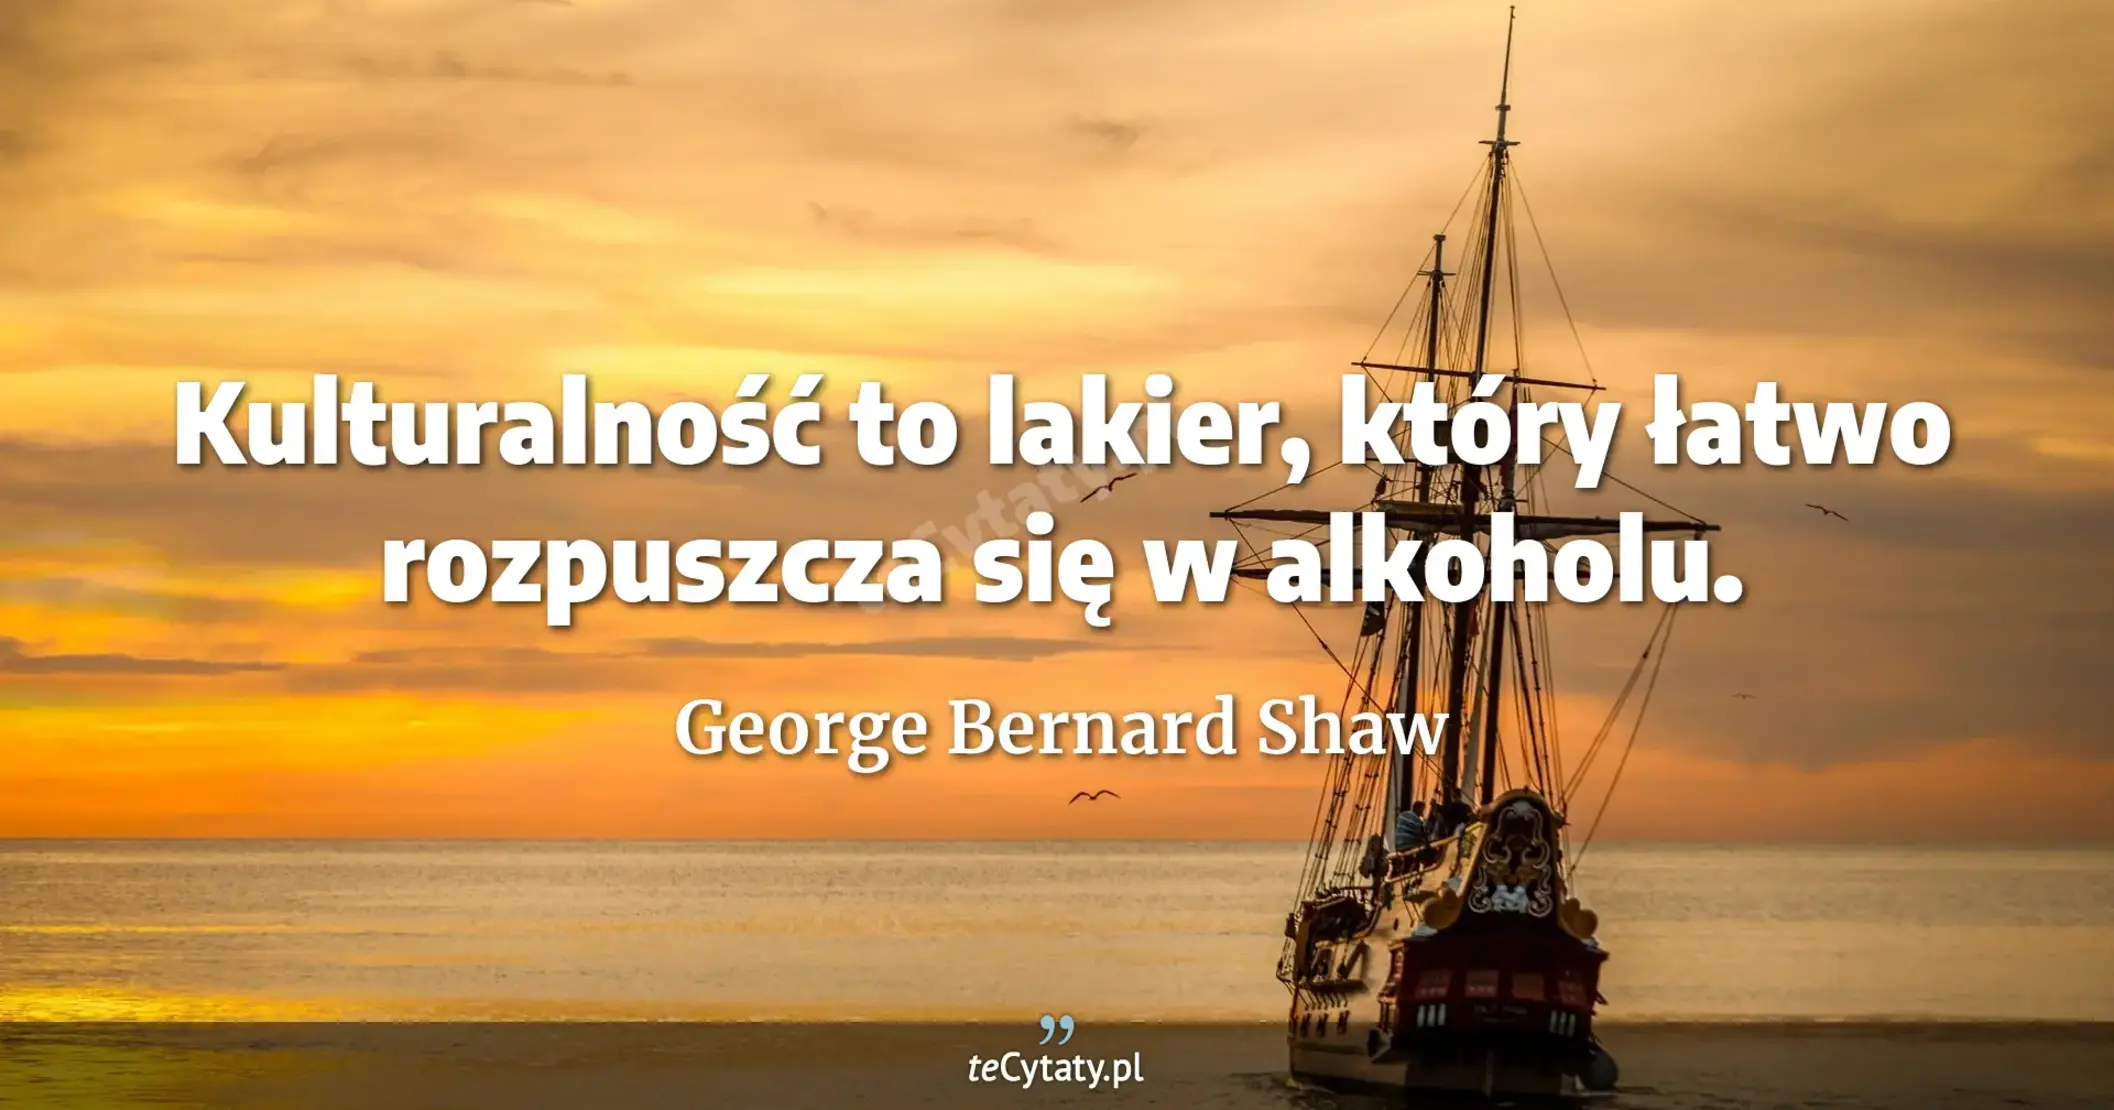 Kulturalność to lakier, który łatwo rozpuszcza się w alkoholu. - George Bernard Shaw